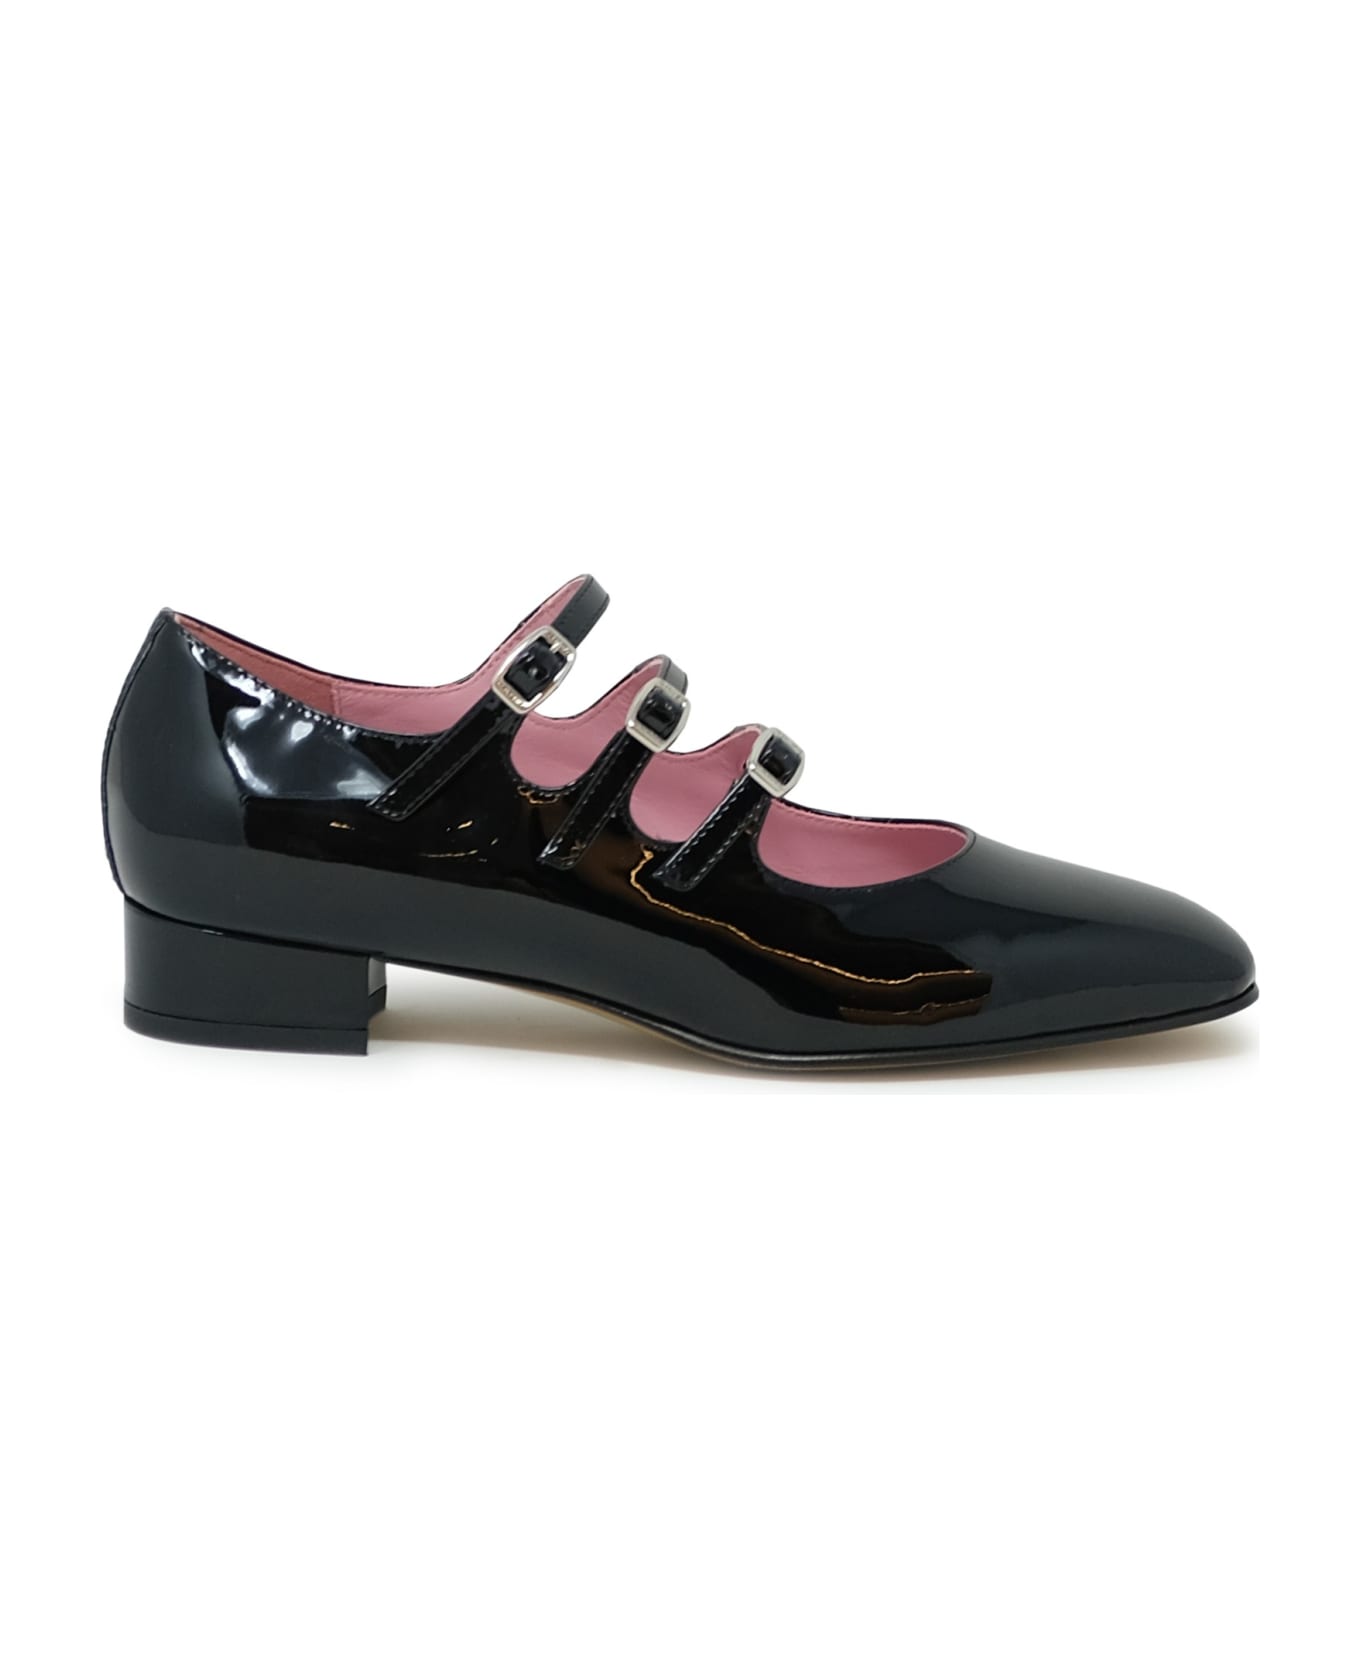 Carel Paris Black Patent Leather Ballet Shoes